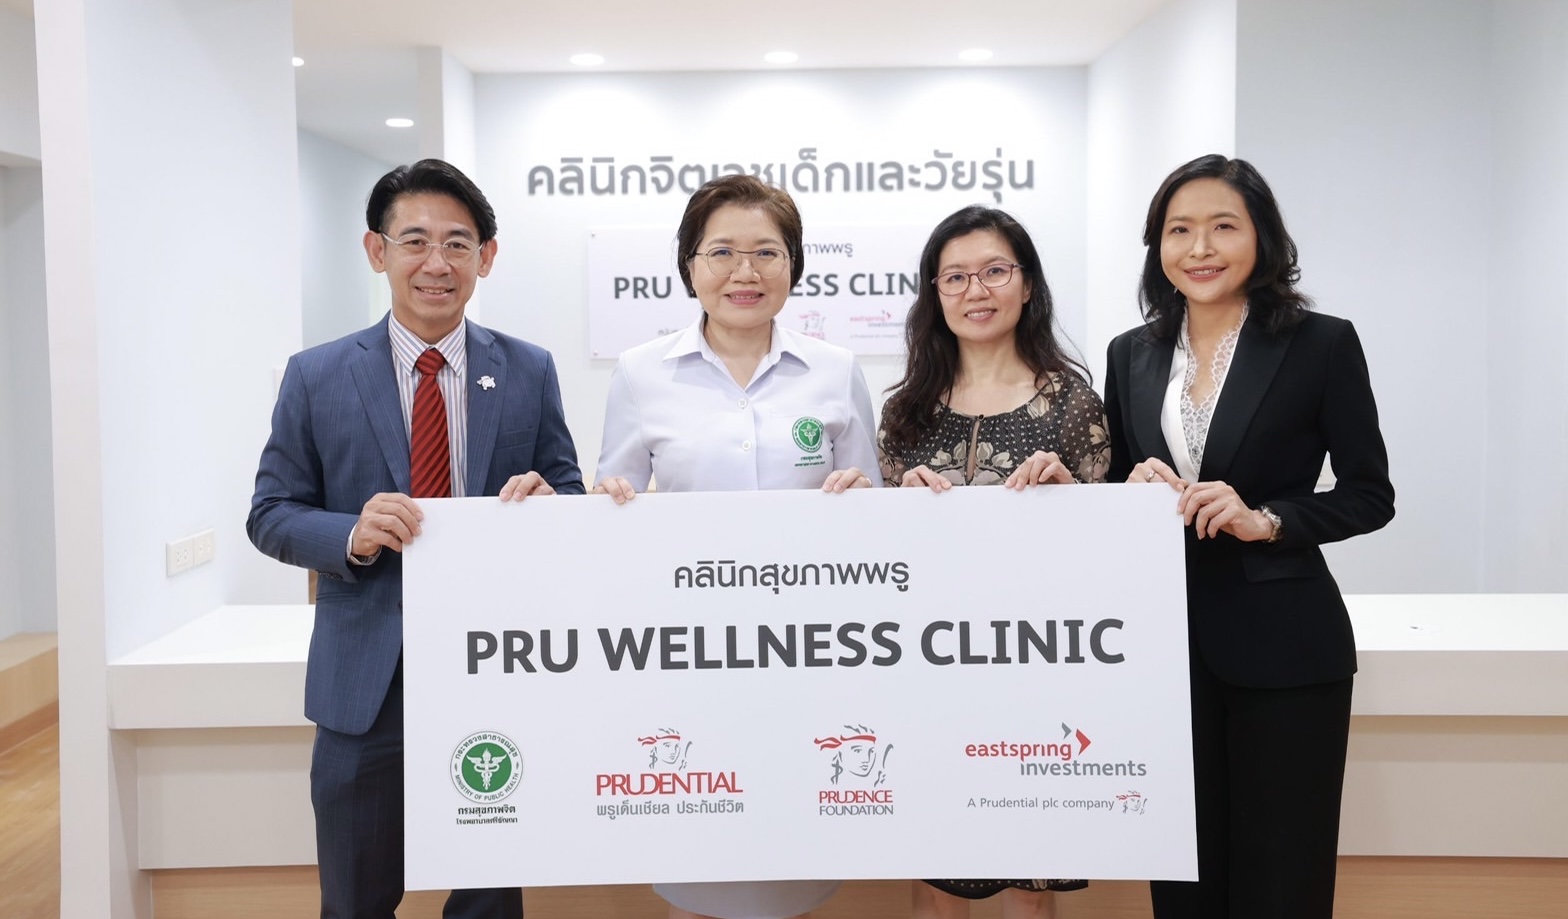 พรูเด็นเชียล ประเทศไทย เดินหน้าดูแลสุขภาพที่ดีของคนไทย ด้วยสุขภาพใจที่แข็งแรงมอบ “PRU Wellness Clinic” ร่วมกับ พรูเด็นซ์ ฟาวน์เดชัน และ อีสท์สปริง (ประเทศไทย)